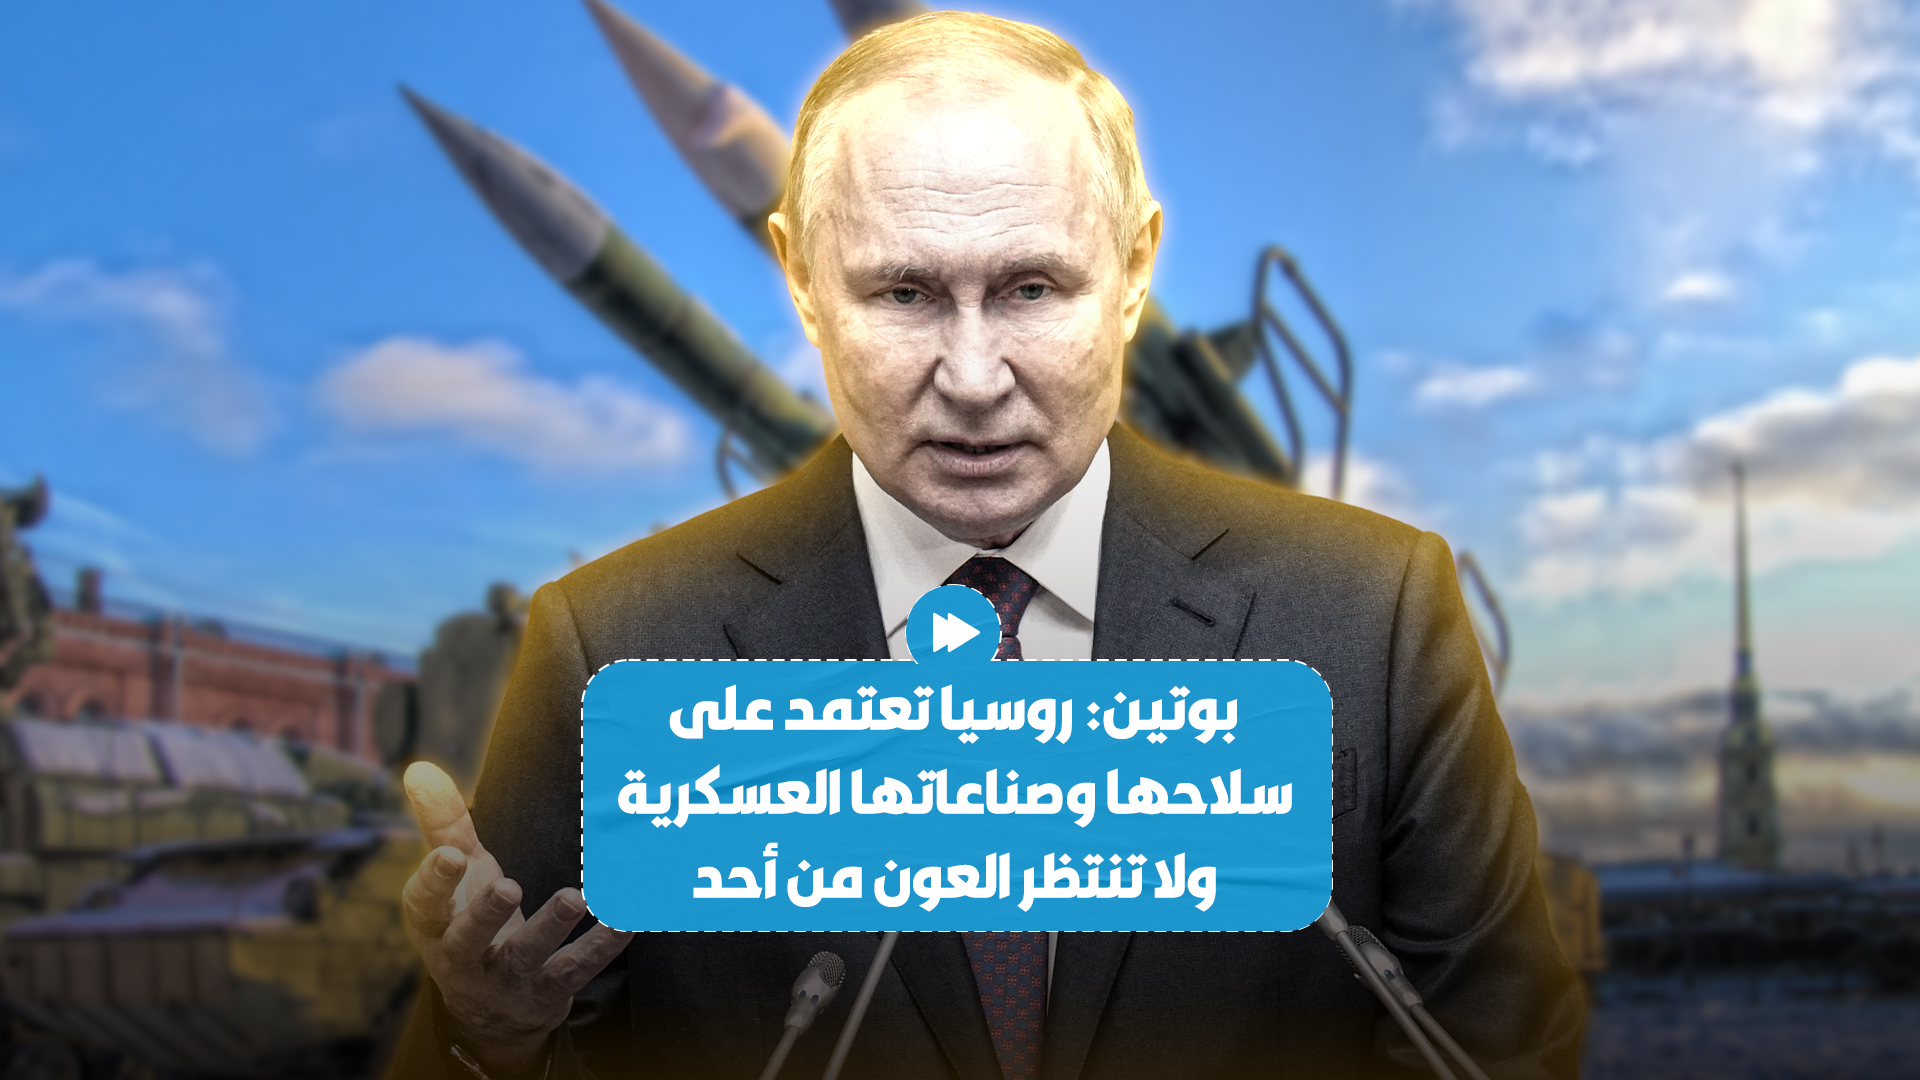 الرئيس الروسي فلاديمير بوتين يؤكد أن روسيا تعتمد على نفسها بالكامل عسكريا ولا تنتظر العون من أحد